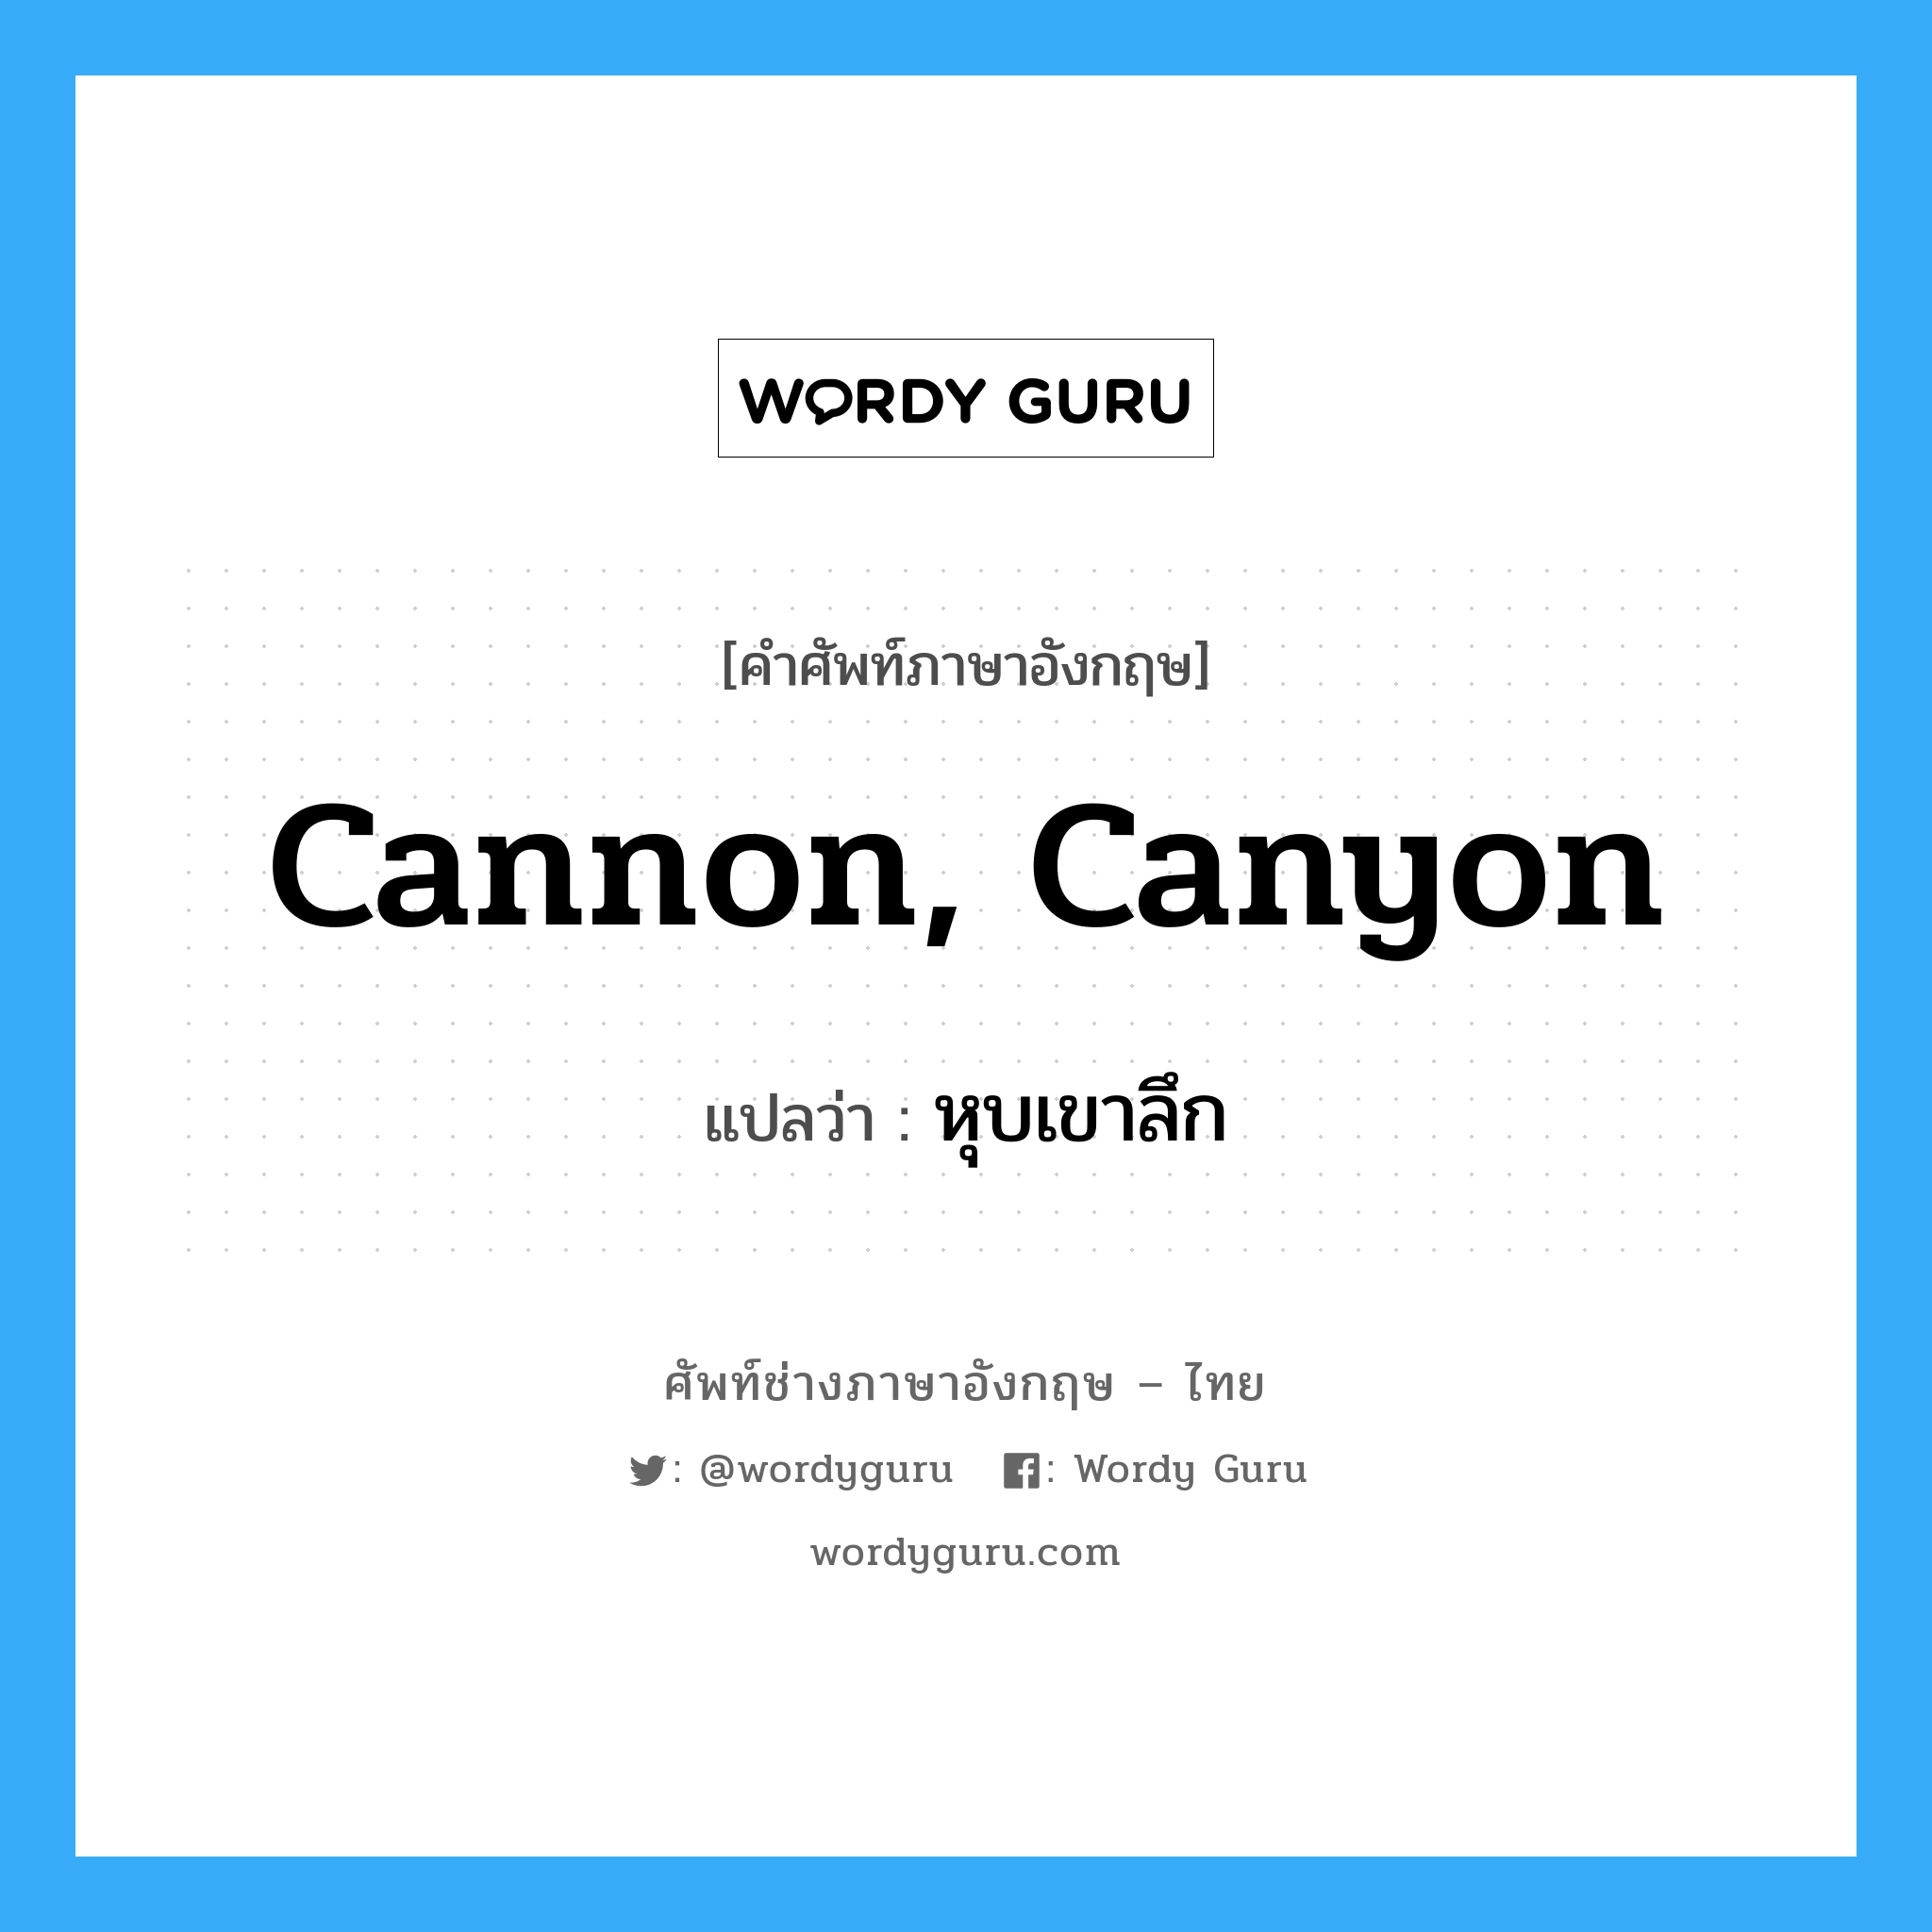 หุบเขาลึก ภาษาอังกฤษ?, คำศัพท์ช่างภาษาอังกฤษ - ไทย หุบเขาลึก คำศัพท์ภาษาอังกฤษ หุบเขาลึก แปลว่า cannon, canyon